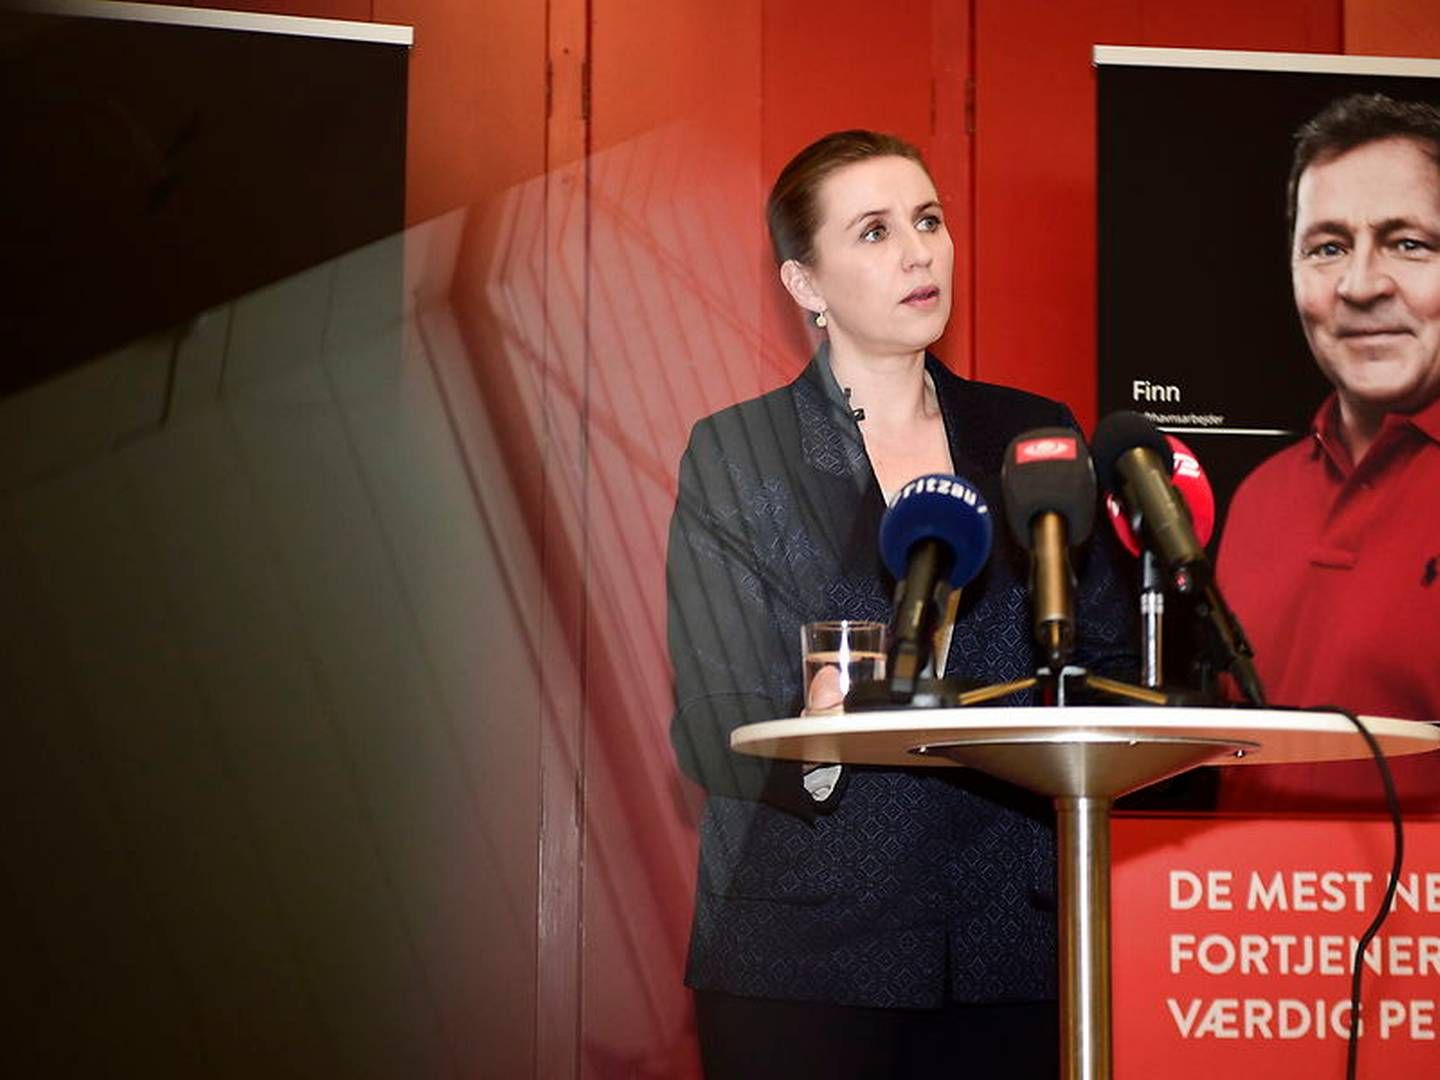 Socialdemokratiets formand Mette Frederiksen da hun præsenterede udspillet "De mest nedslidte fortjener også en værdig pension" i januar. | Foto: Mads Claus Rasmussen/Ritzau Scanpix